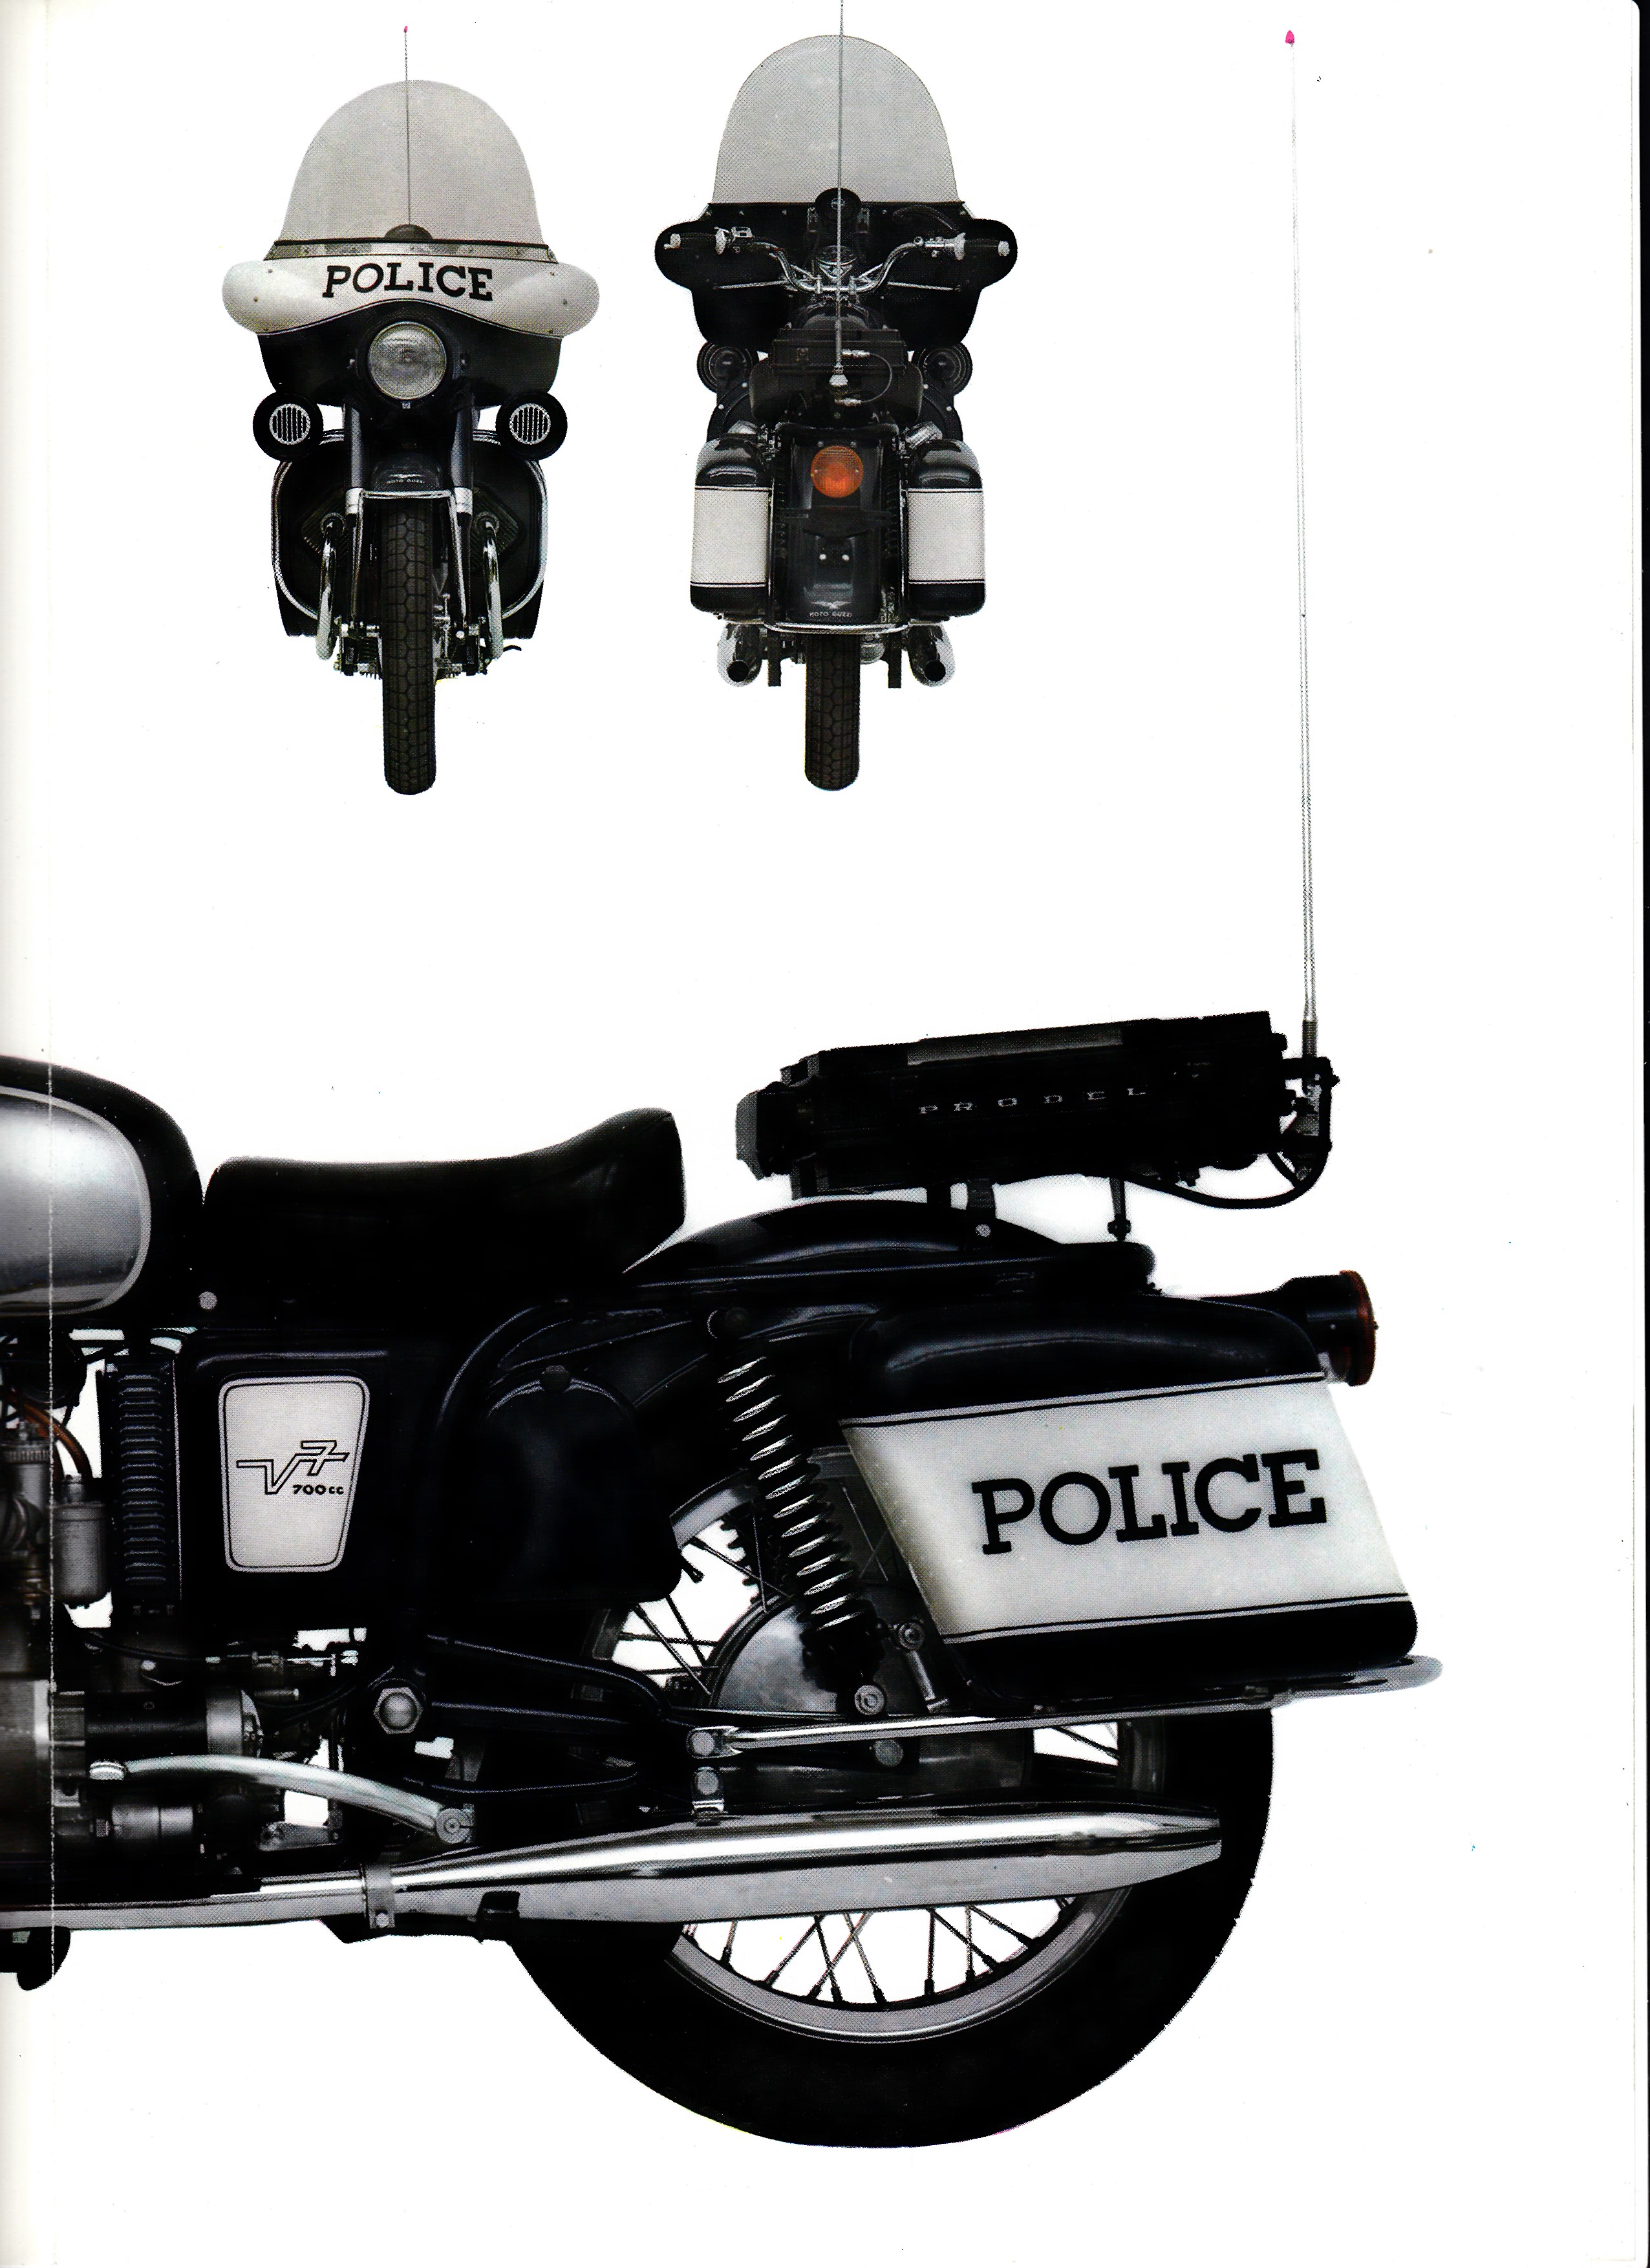 Brochure - Moto Guzzi V7 police